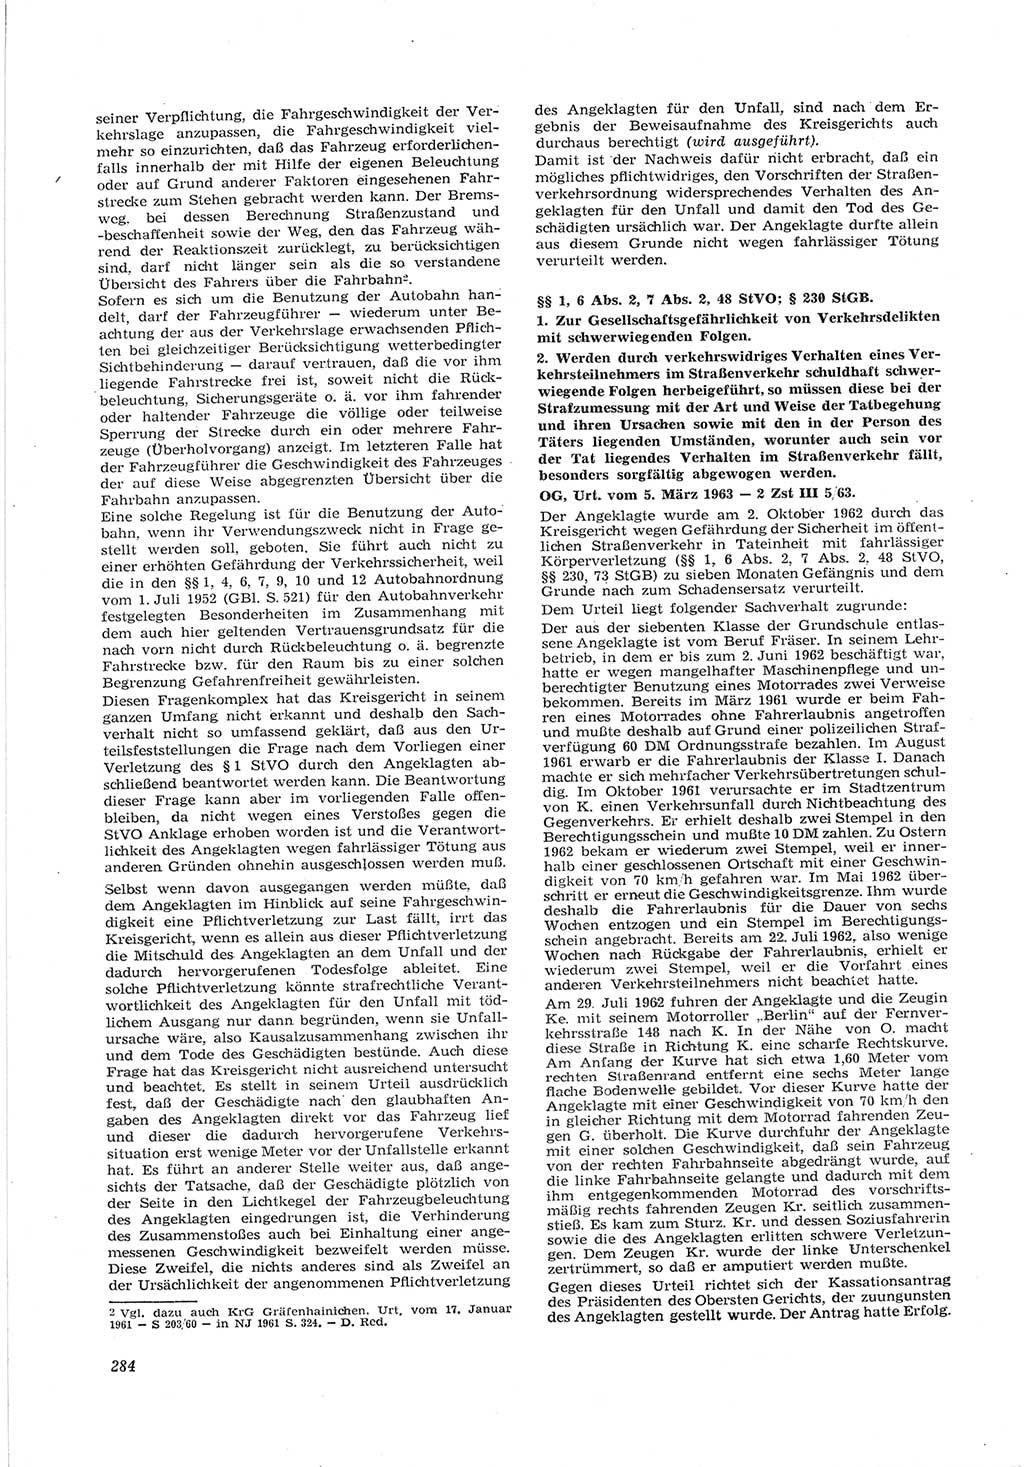 Neue Justiz (NJ), Zeitschrift für Recht und Rechtswissenschaft [Deutsche Demokratische Republik (DDR)], 17. Jahrgang 1963, Seite 284 (NJ DDR 1963, S. 284)